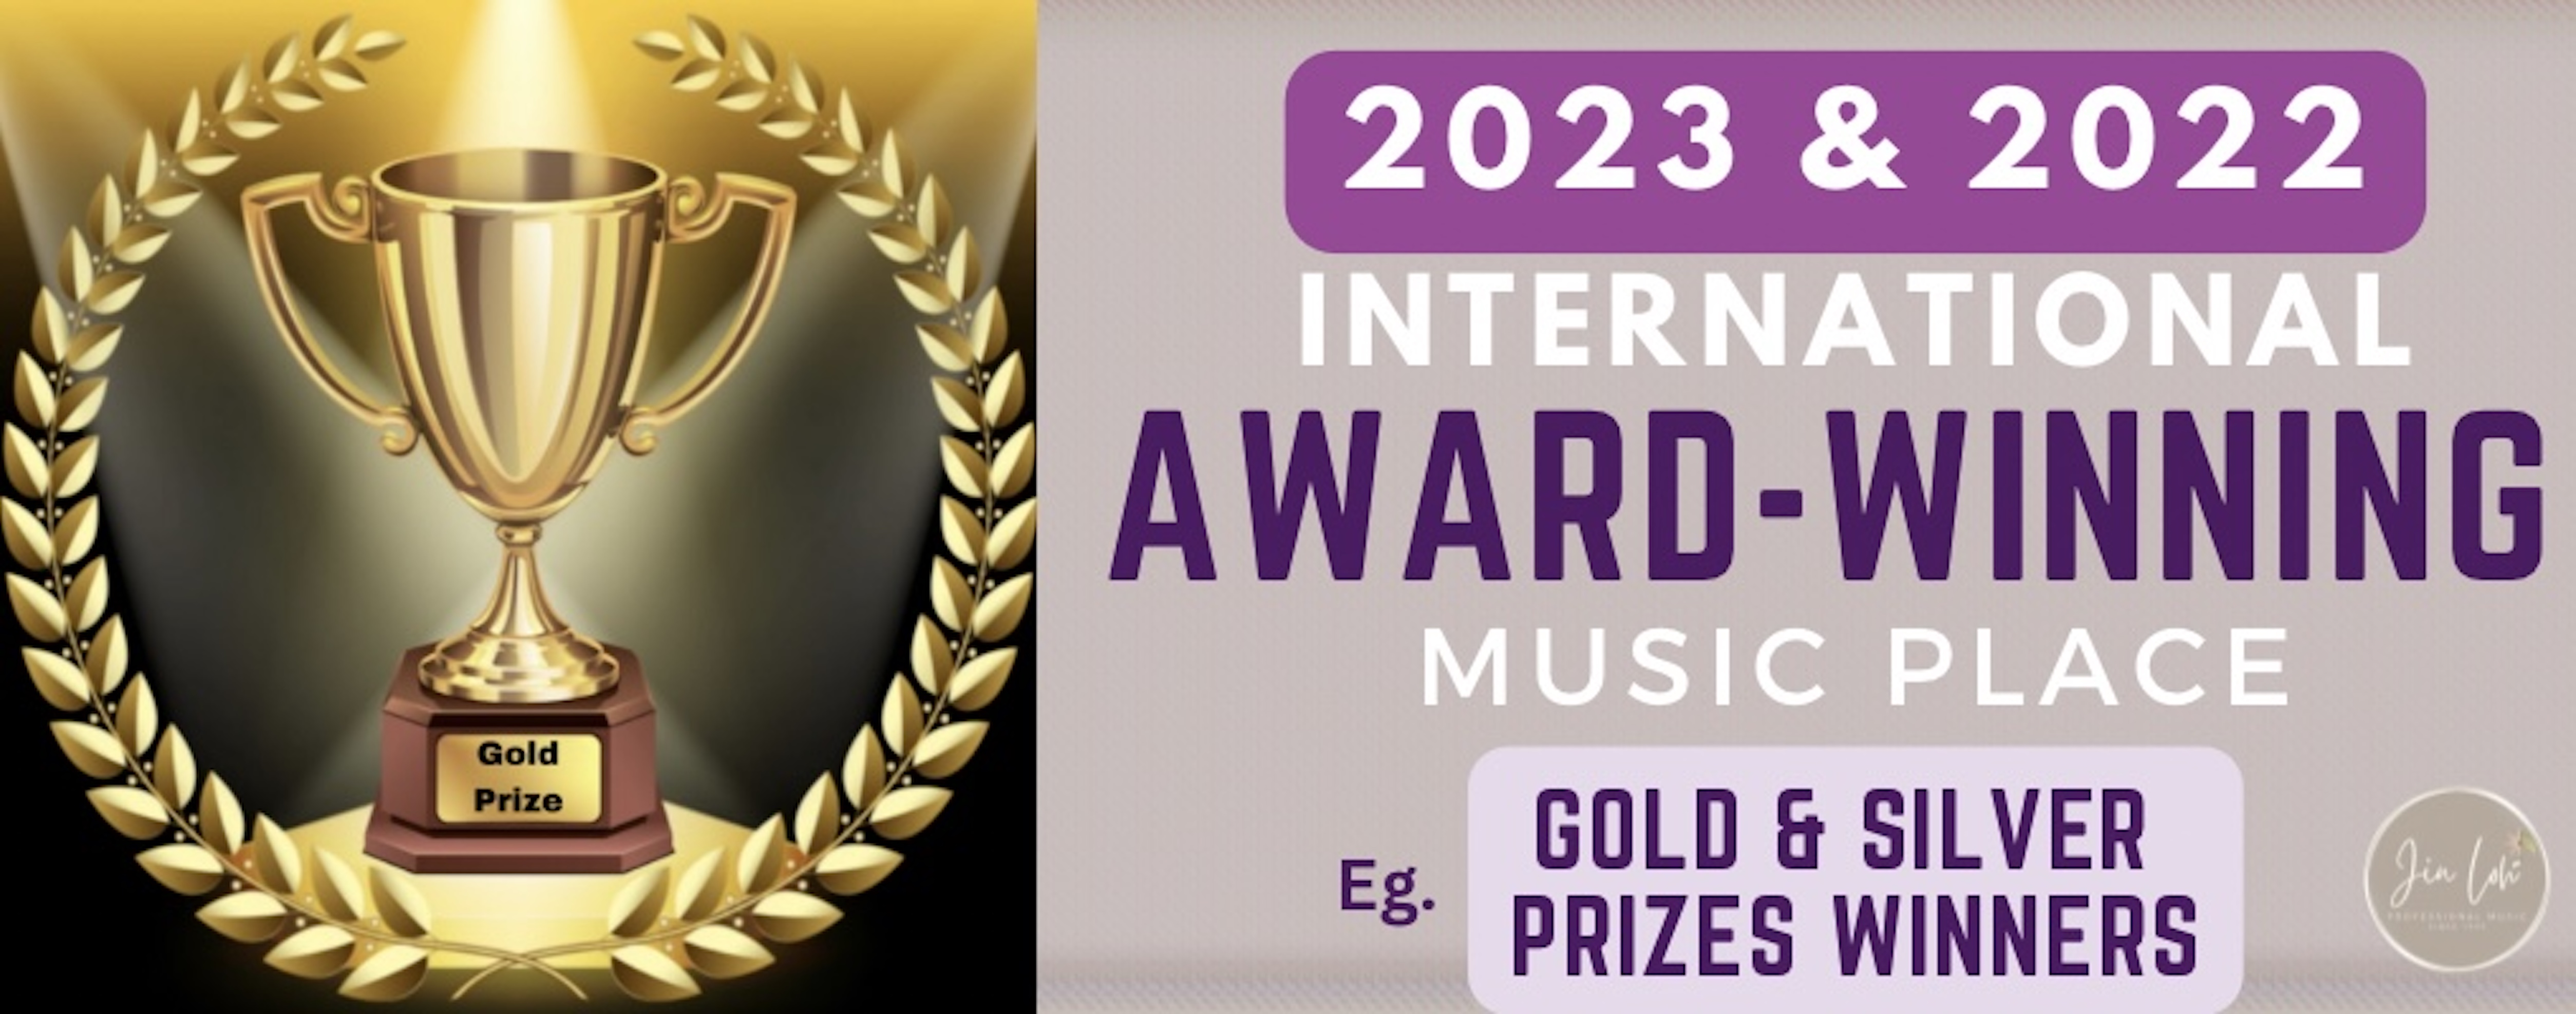 2023 Award-Winning Music Place